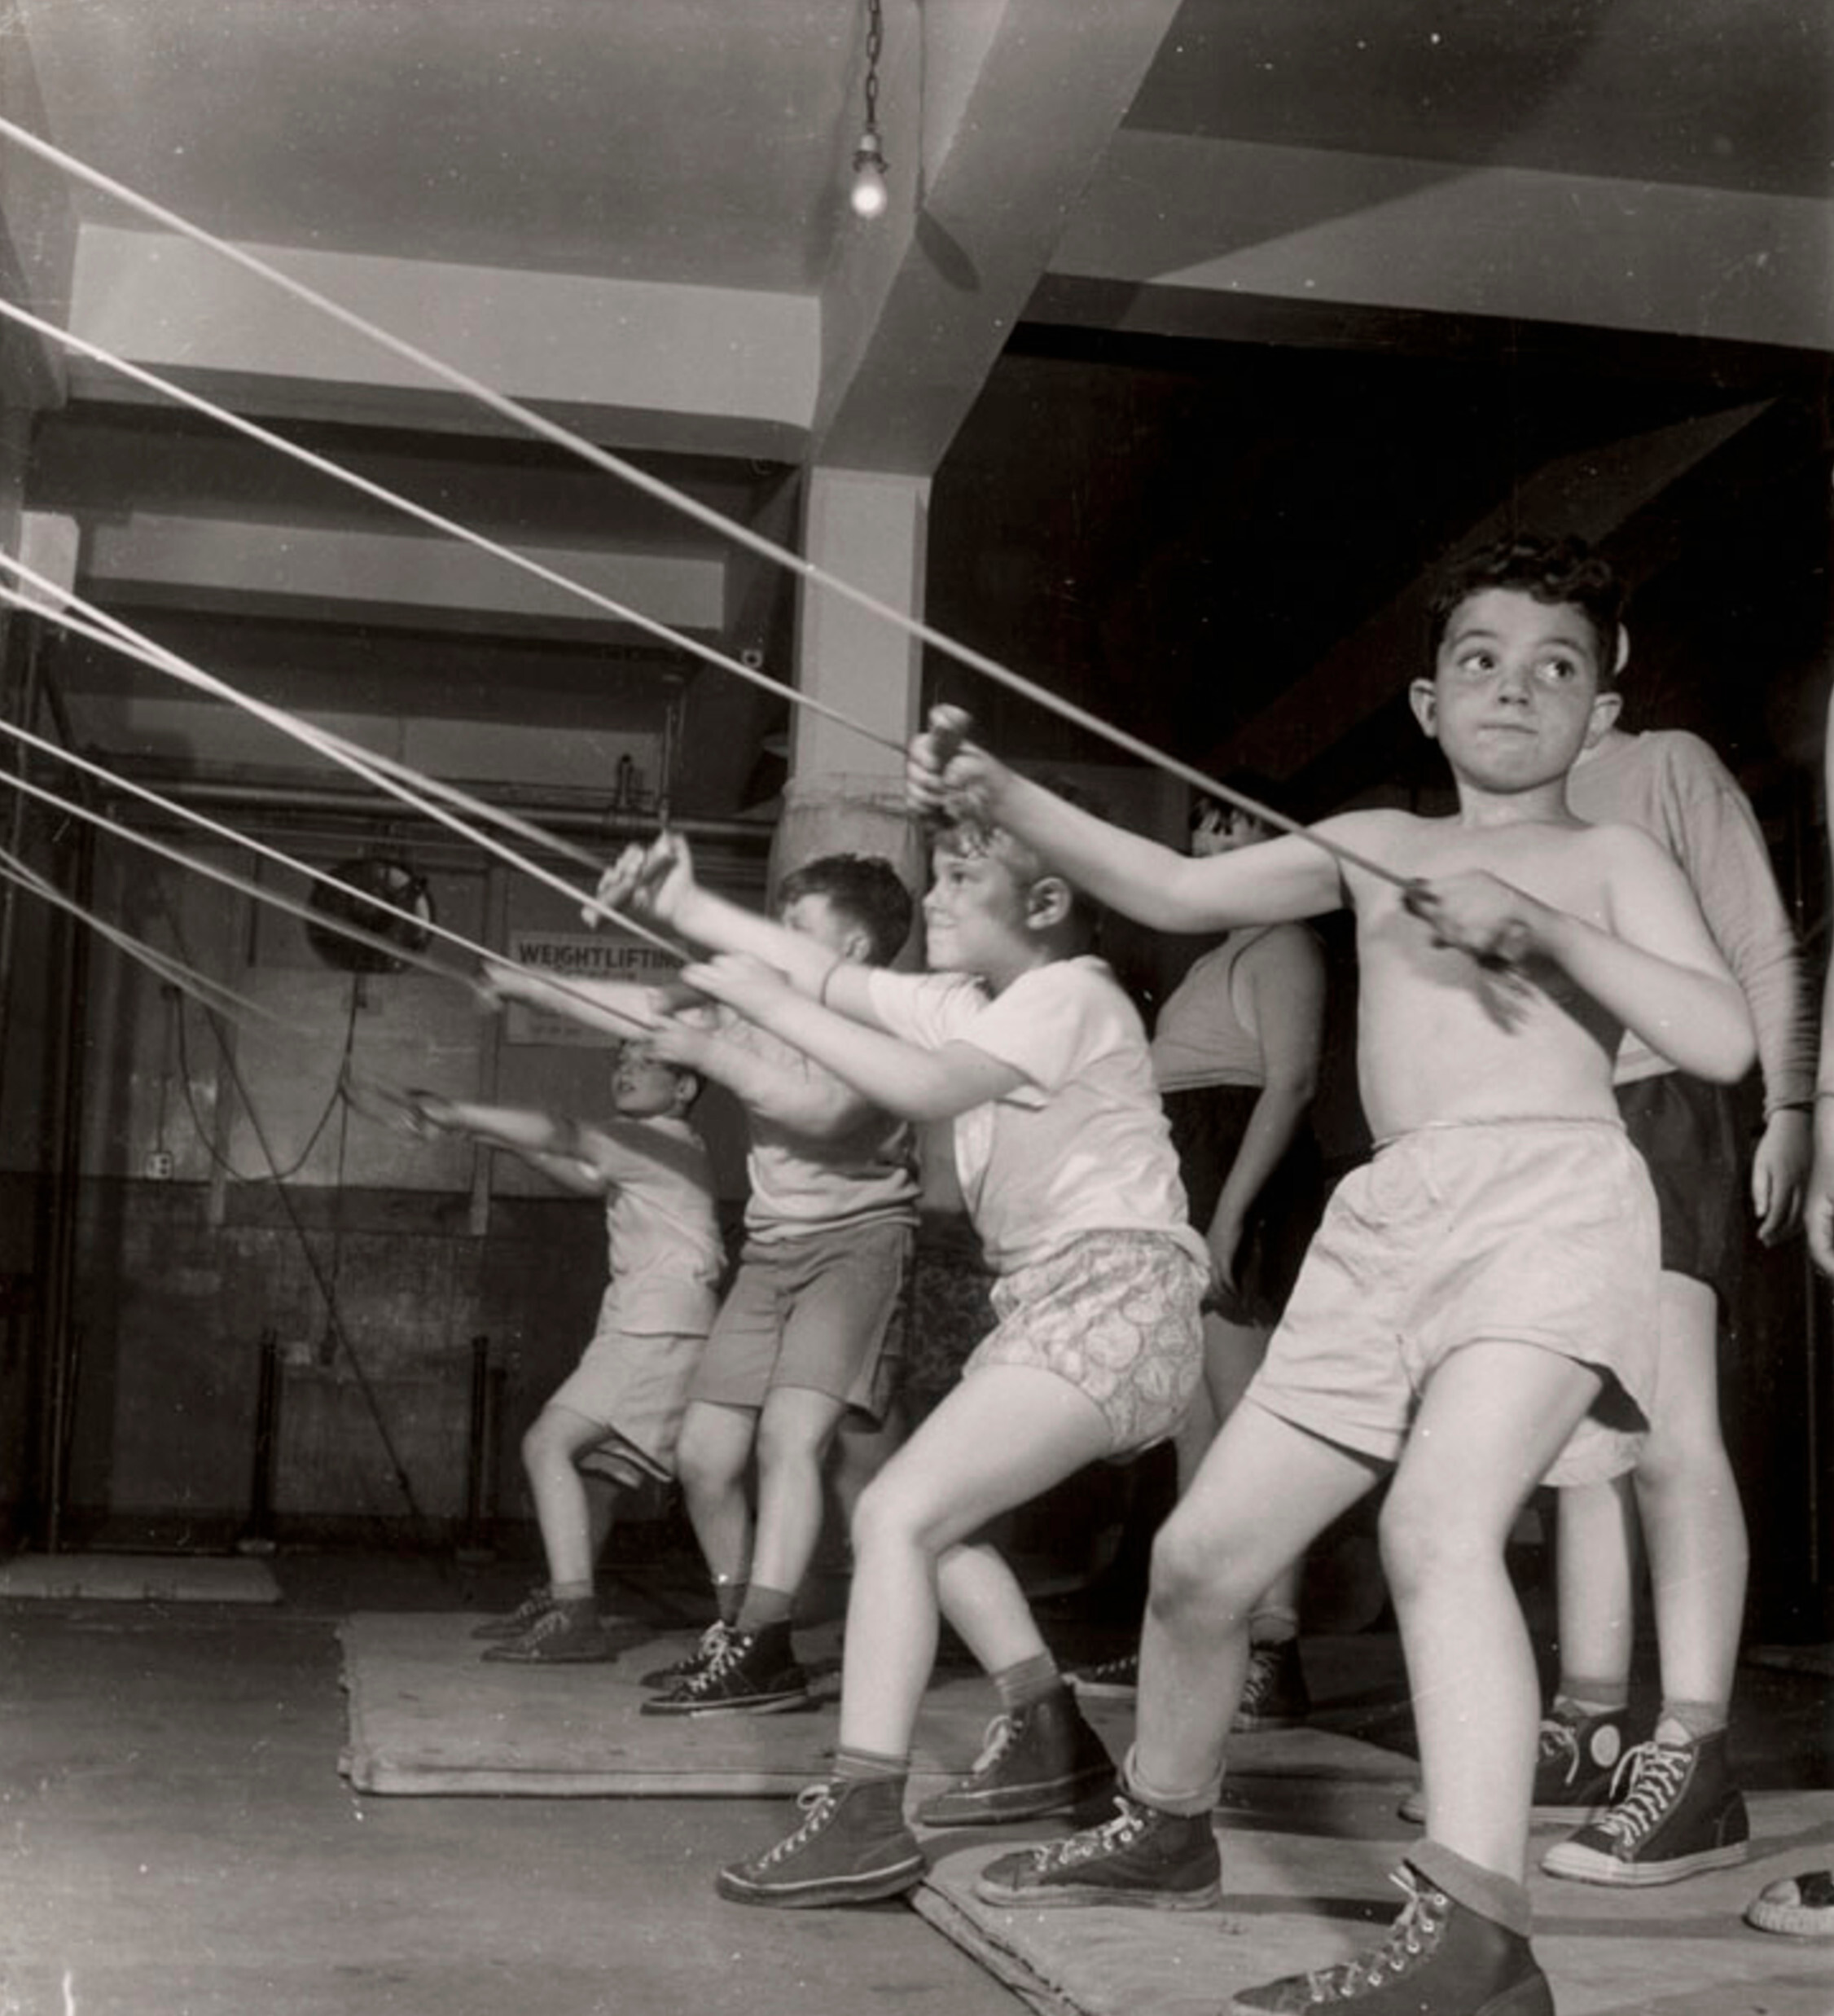 Мальчики тренируются в спортзале Еврейского общинного дома Бенсонхерст, Бруклин, Нью-Йорк, ок. 1949 г. Фотограф Роман Вишняк